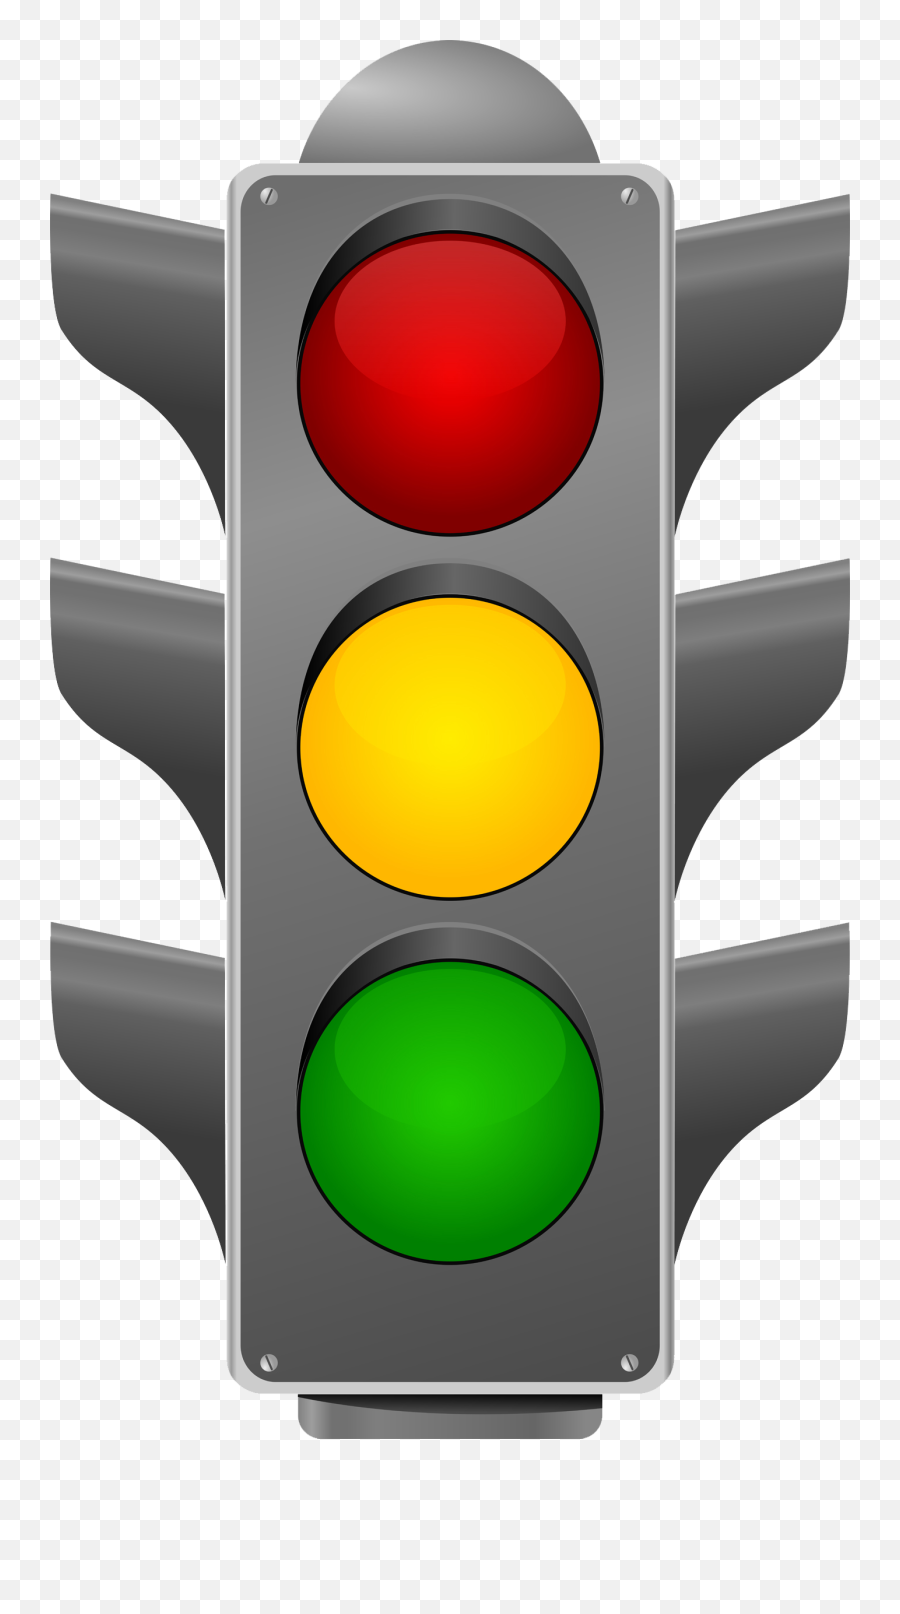 Traffic Light Png Image - Traffic Light Transparent Background,Street Light Png